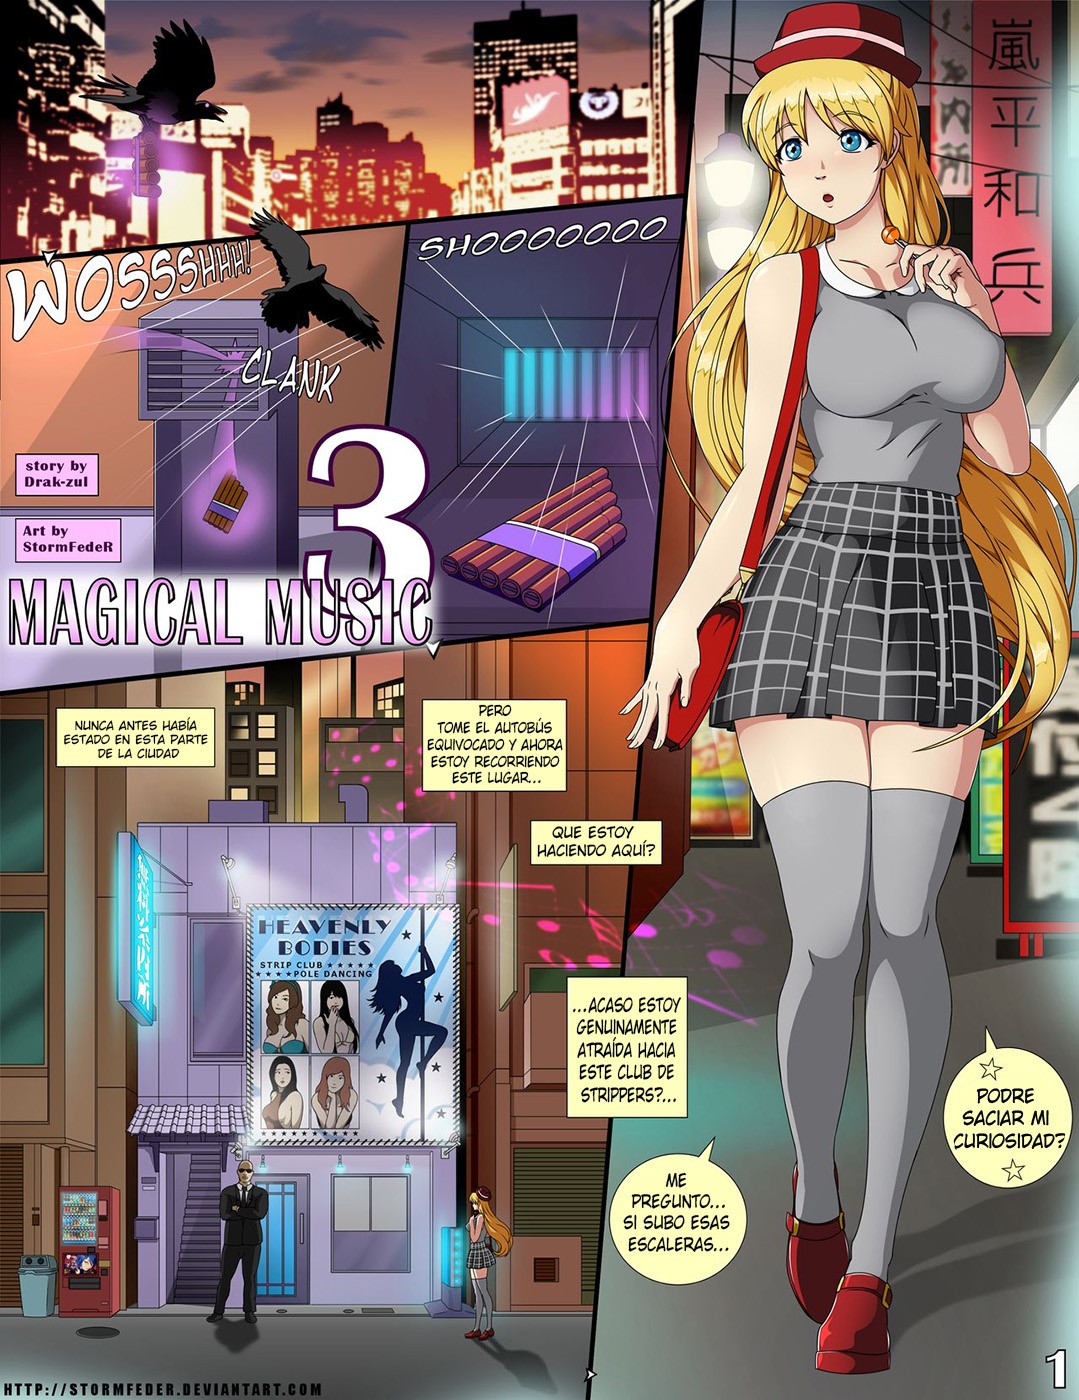 Venus Porn Comics - Sexy Anime Magical Music 3 StormFedeR - Comics Porno